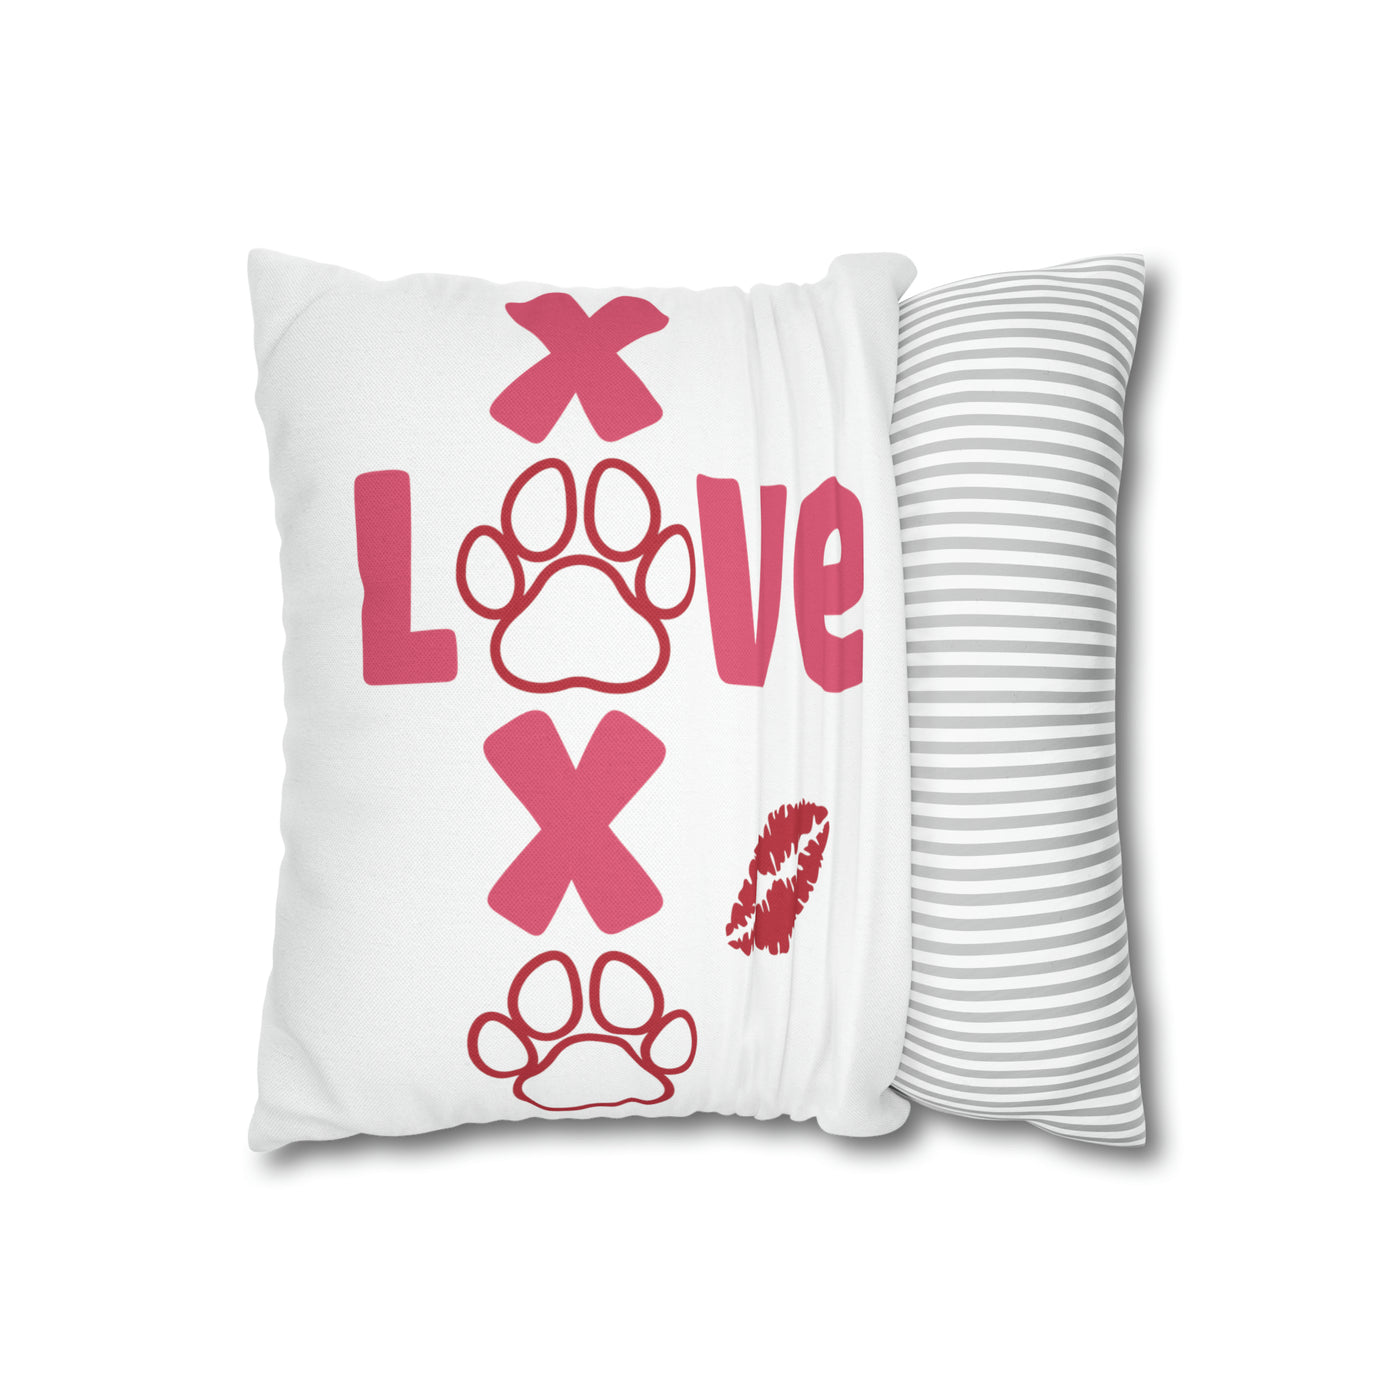 Love XOXO Square Pillow Case